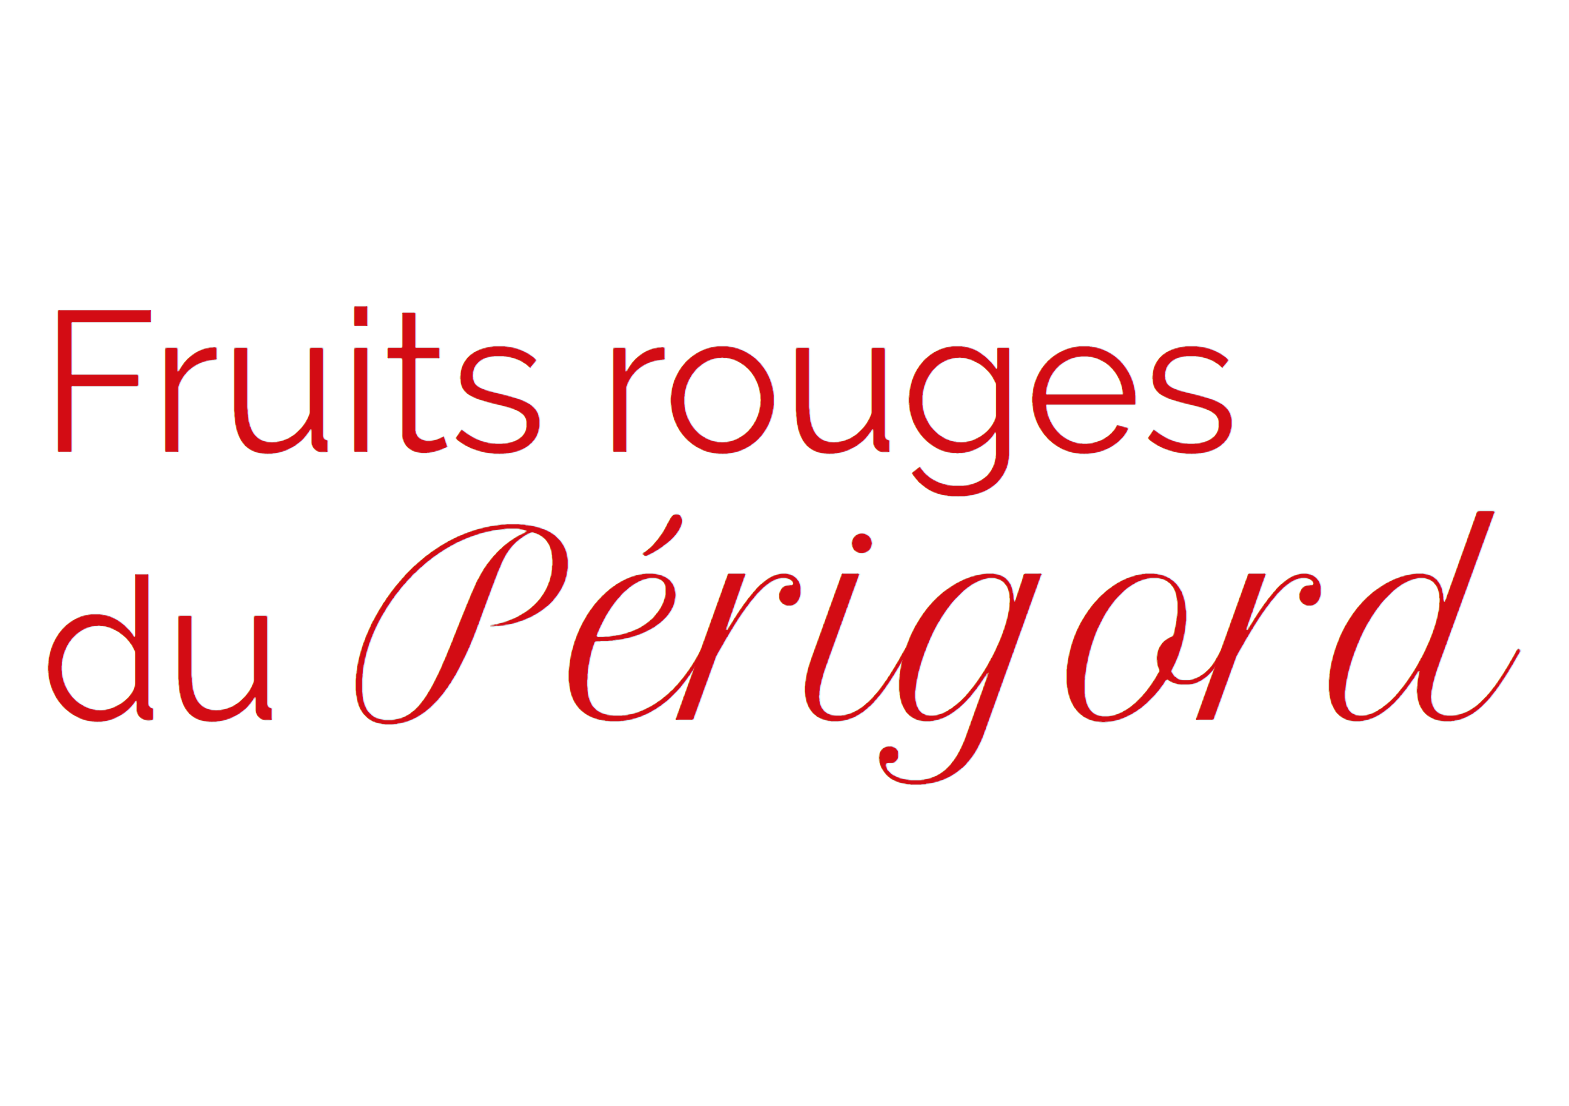 FRUITS ROUGES DU PERIGORD